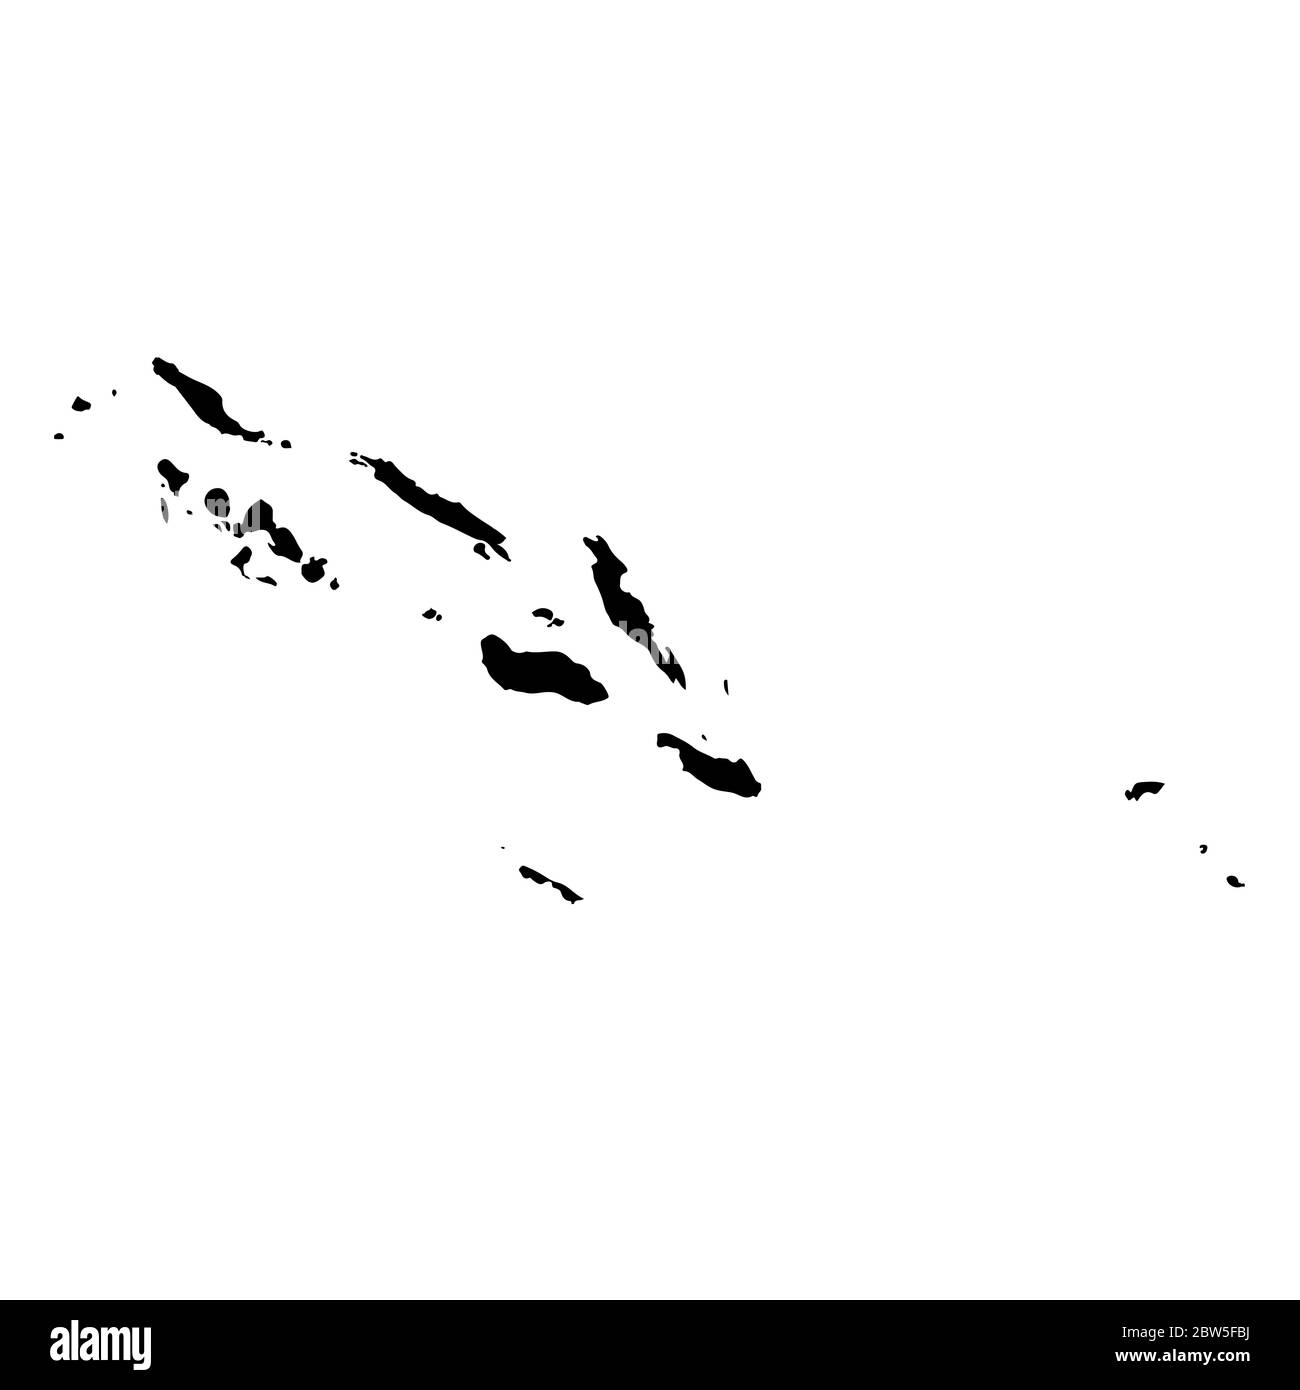 Mappa vettoriale Isole Salomone. Illustrazione vettoriale isolata. Nero su sfondo bianco. Illustrazione EPS 10. Illustrazione Vettoriale